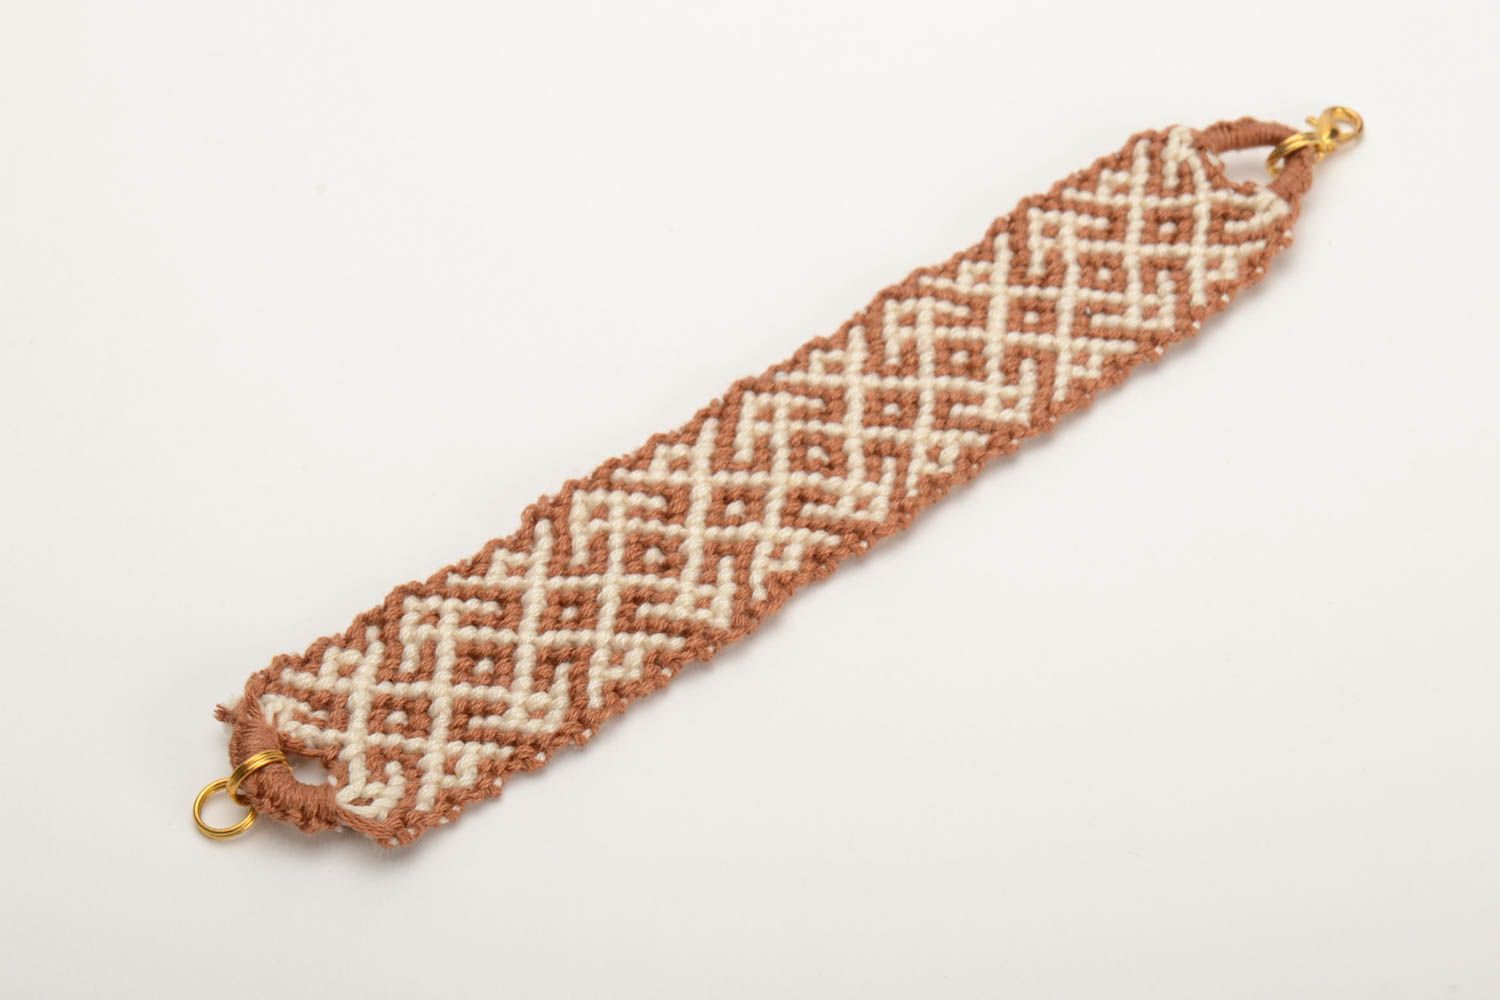 Плетеный браслет из ниток мулине ручной работы широкий красивый бело-коричневый фото 4